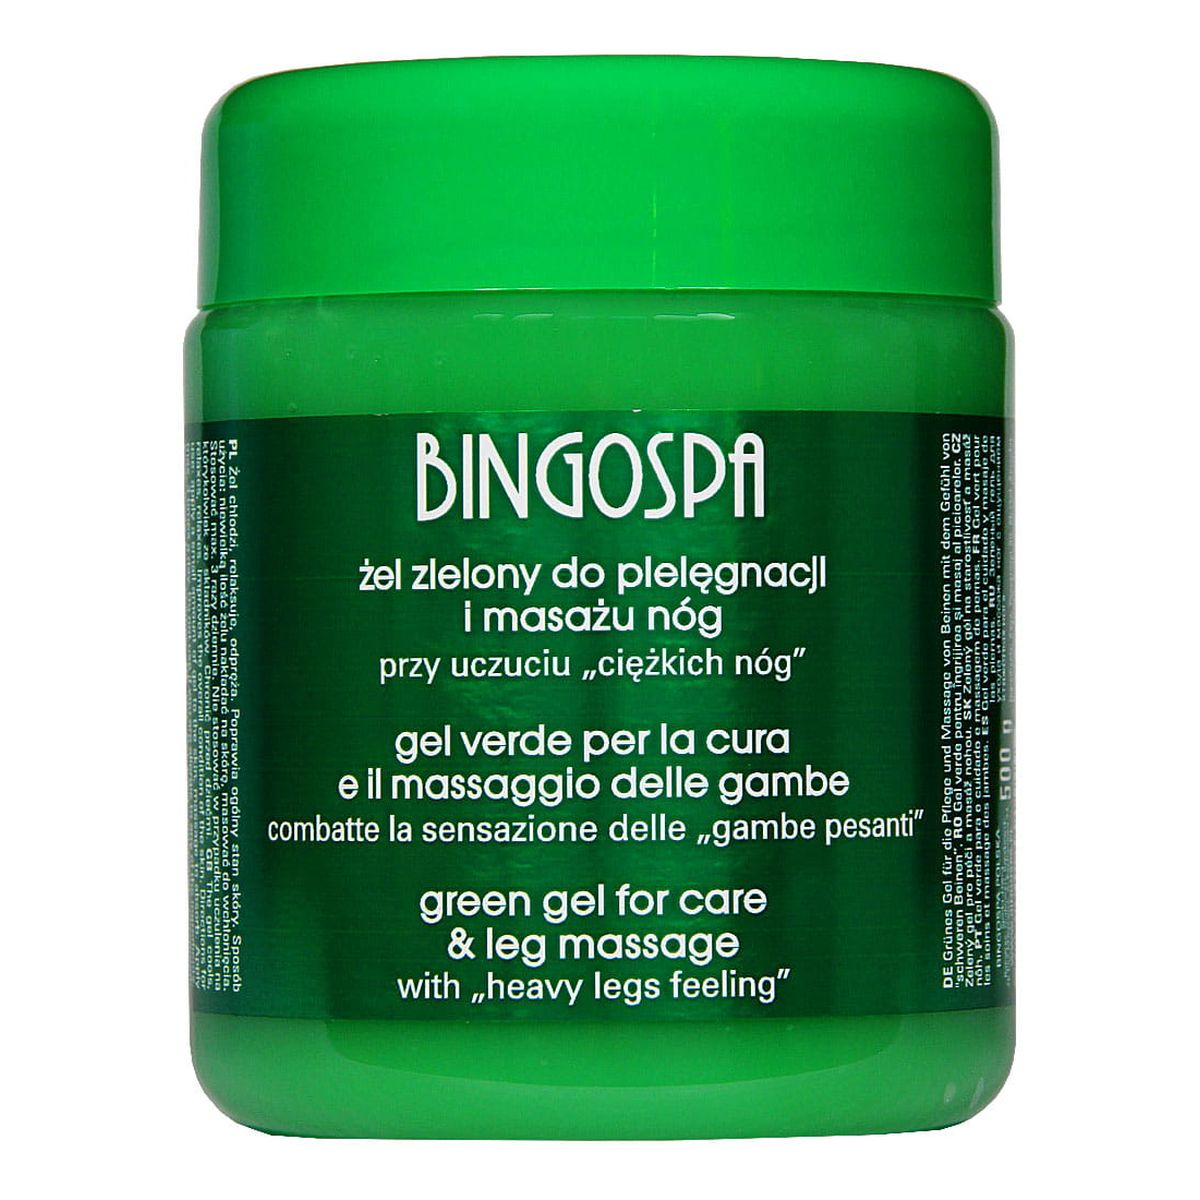 BingoSpa Żel zielony do pielęgnacji i masażu nóg 500g 500g